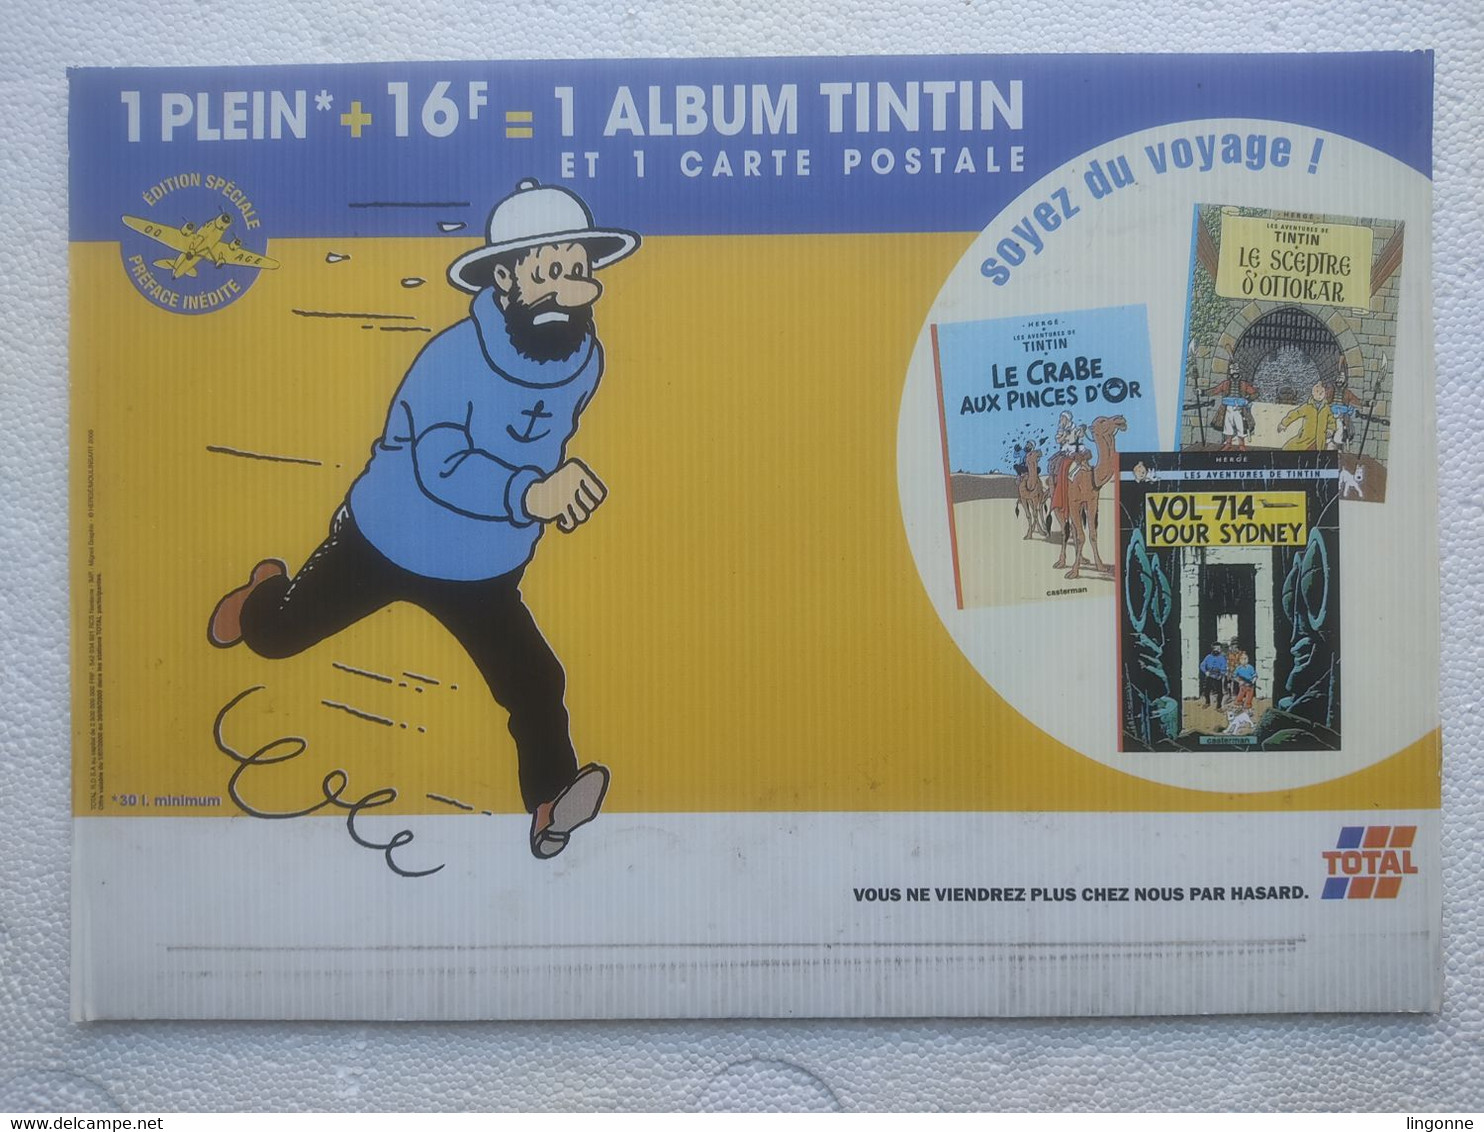 1999 TINTIN PANNEAU PUBLICITAIRE Plastique TOTAL Publicité Sur Point De Vente CAPITAINE HADDOCK Hergé Moulinsart 2000 - Afiches & Offsets